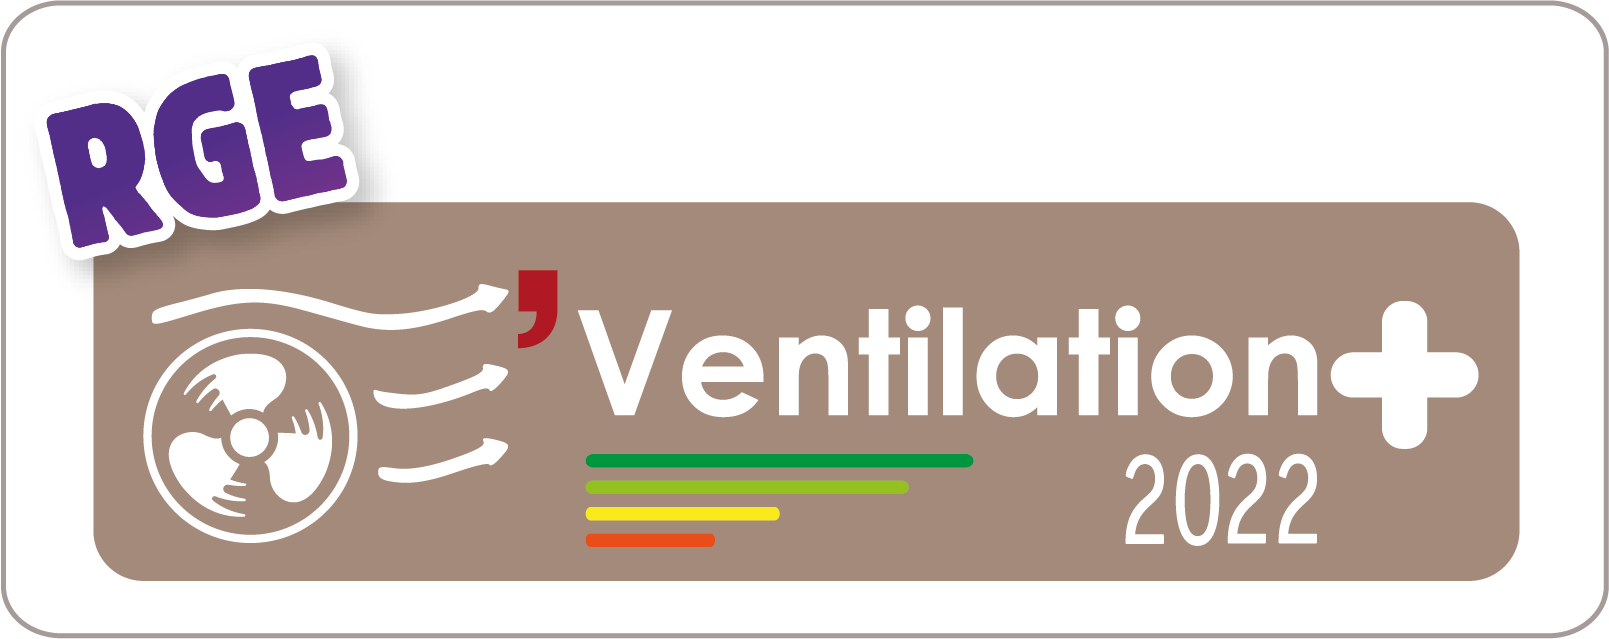 Logo ventillation